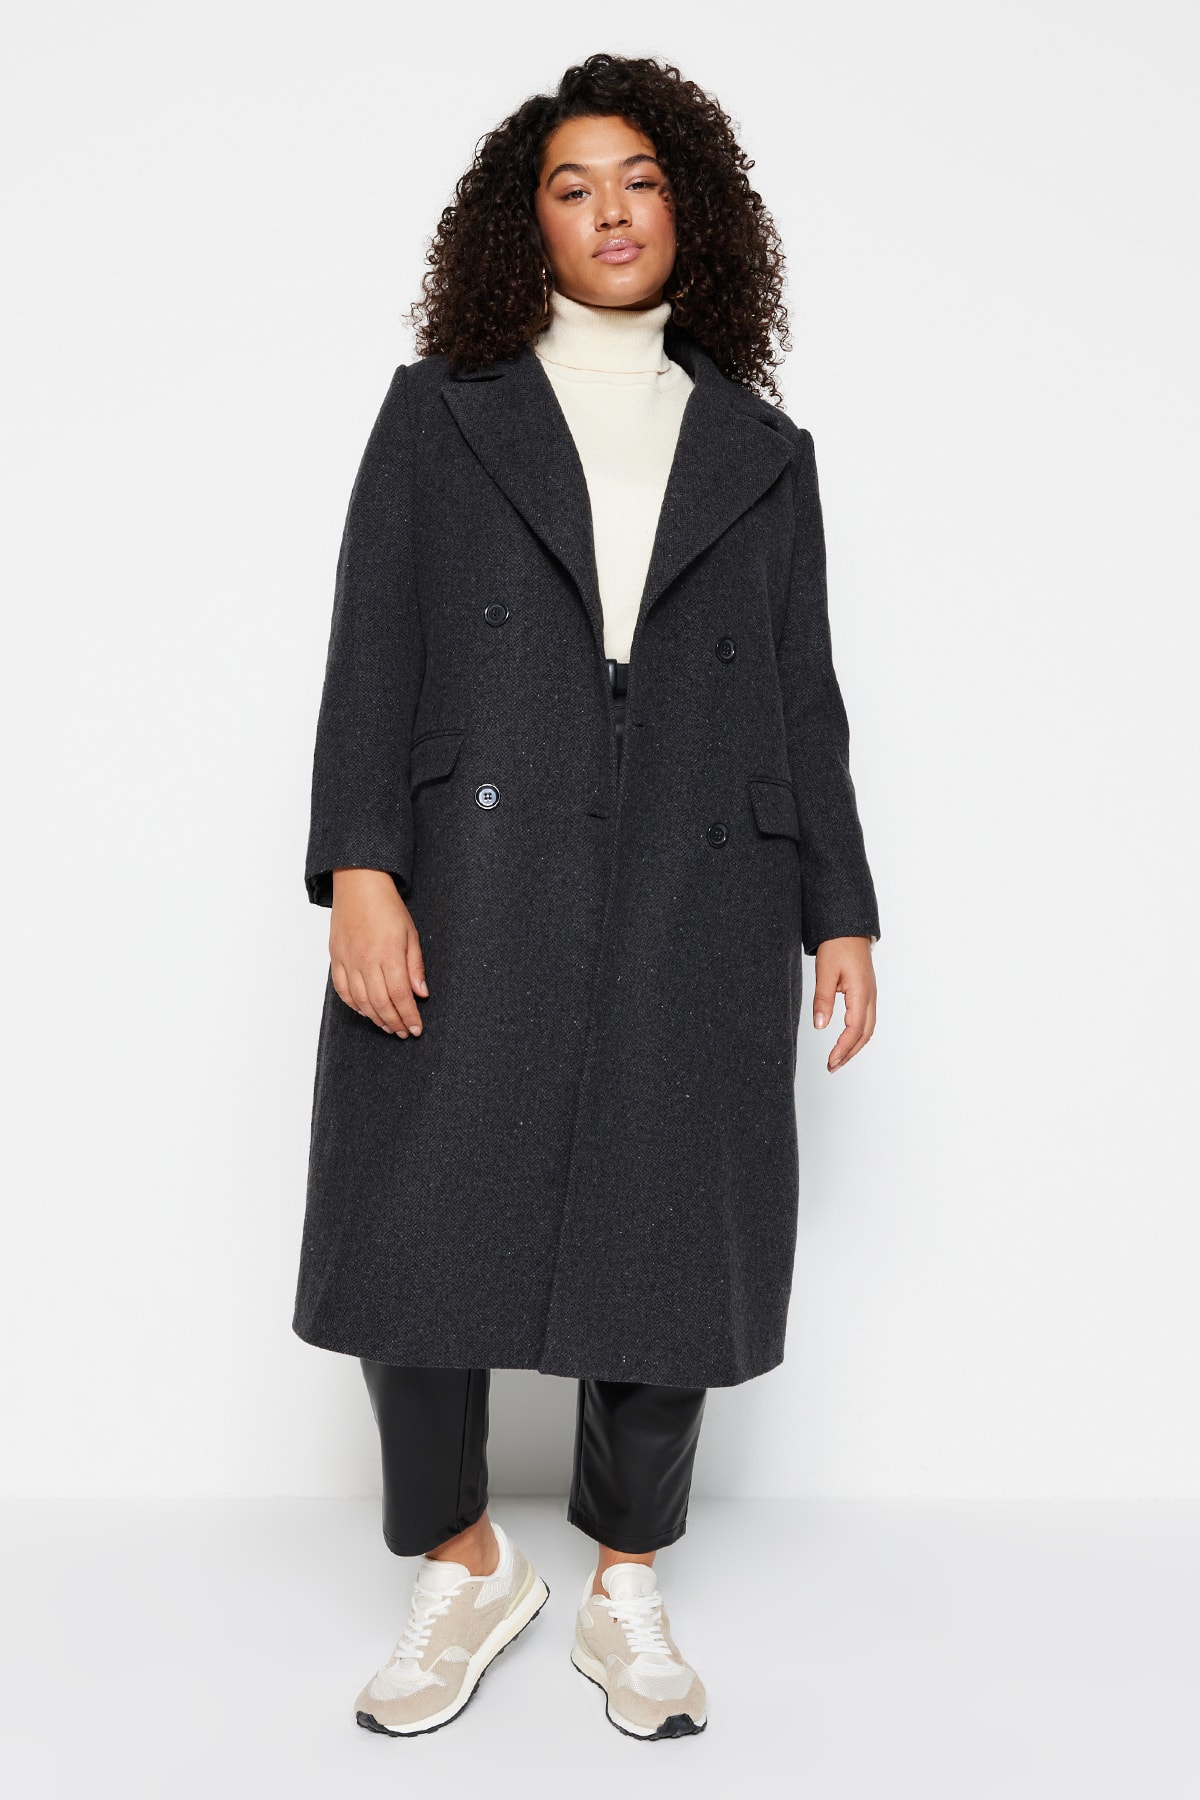 Trendyol Curve Black Cashmere Coat With Pocket Flap